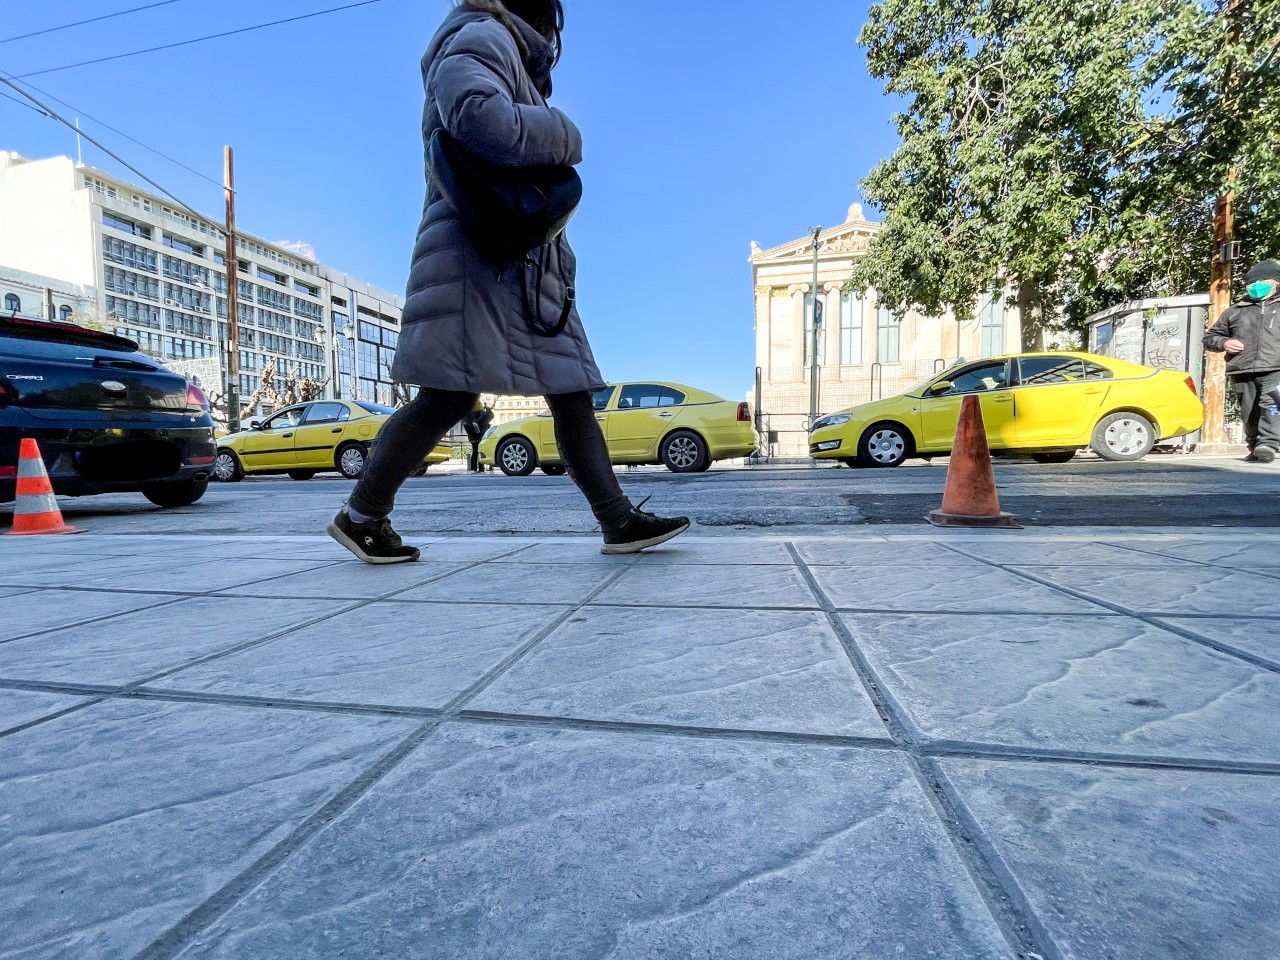 Δήμος Αθηναίων: Αυτά είναι τα νέα ενεργειακά πεζοδρόμια